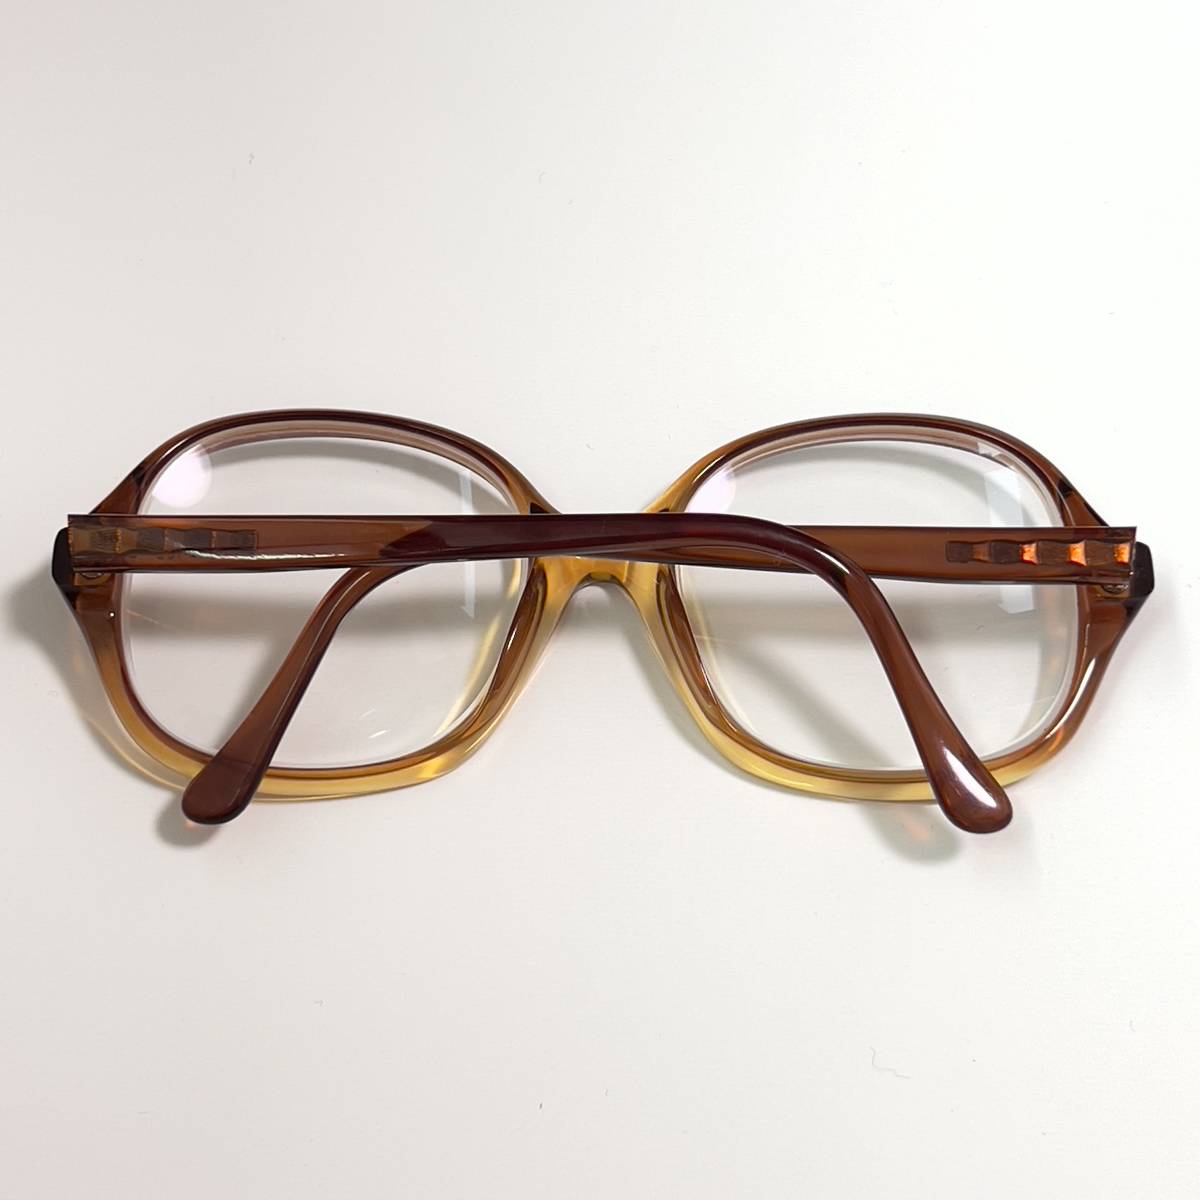 ◆MARWITZ マルヴィッツ ヴィンテージ 眼鏡フレーム アイウェア サングラス メガネ クリア グラデーション ドイツ製 OLD